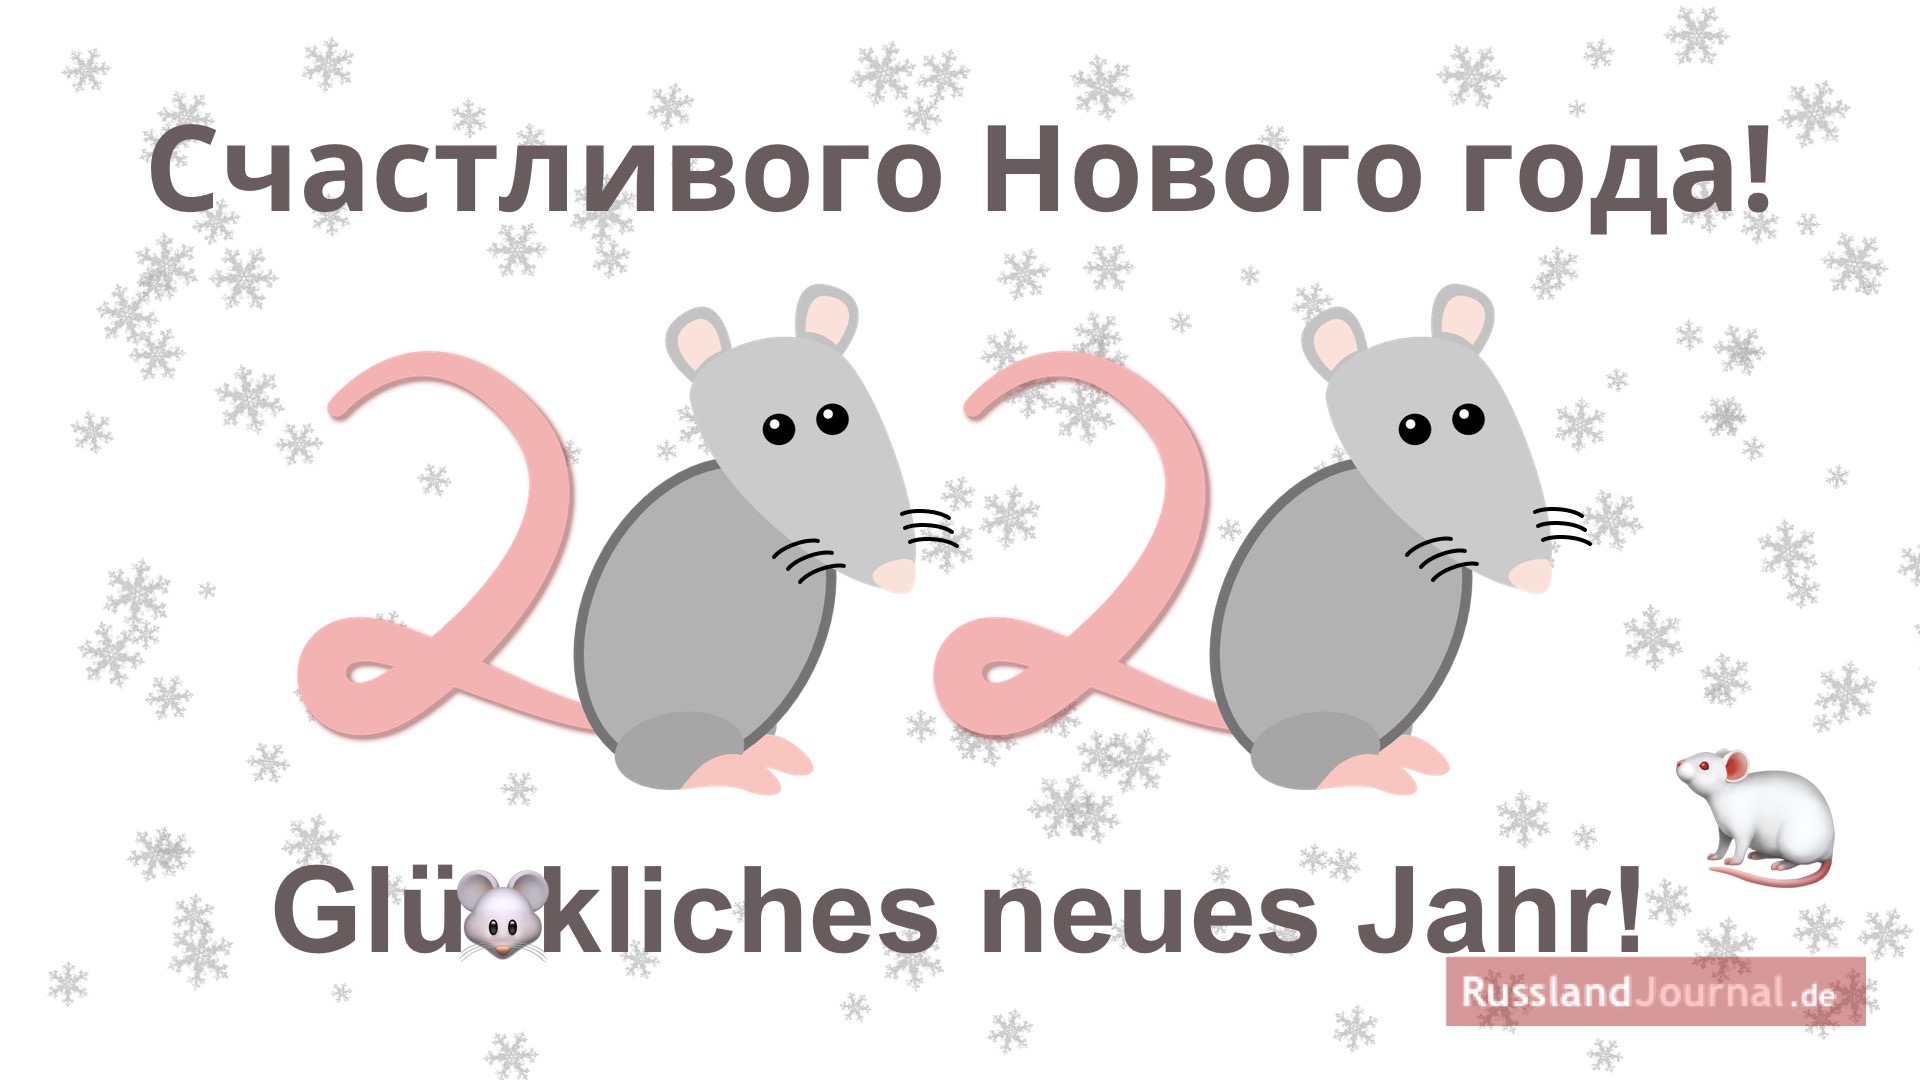 Grußkarte mit Neujahrswünschen mit zwei Ratten, die die Zahl 2020 formen